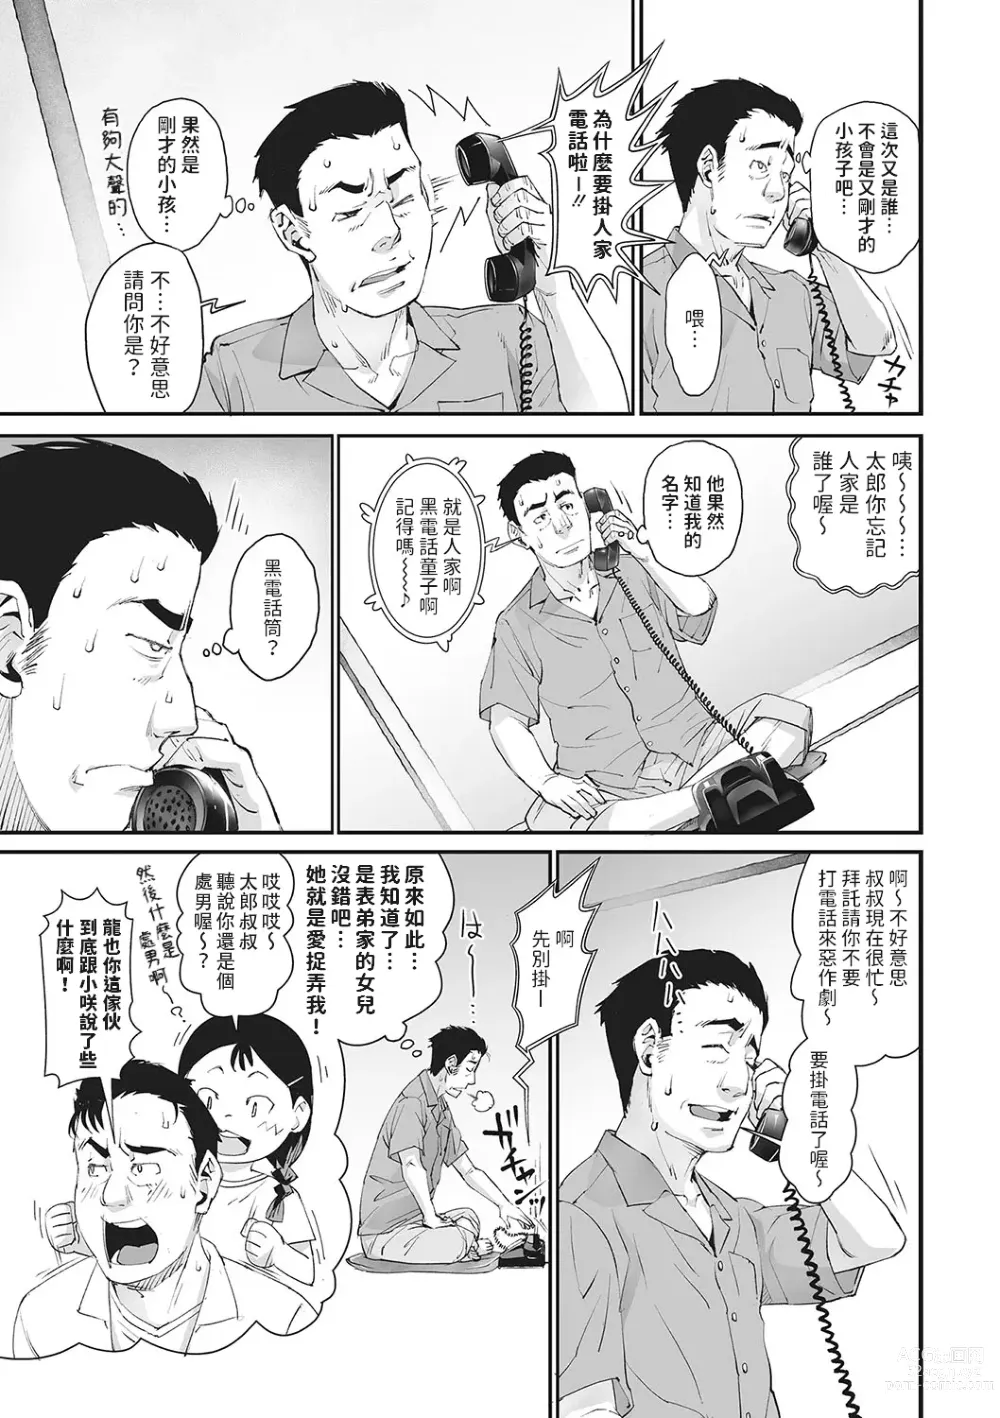 Page 7 of manga Kurodenwarashi